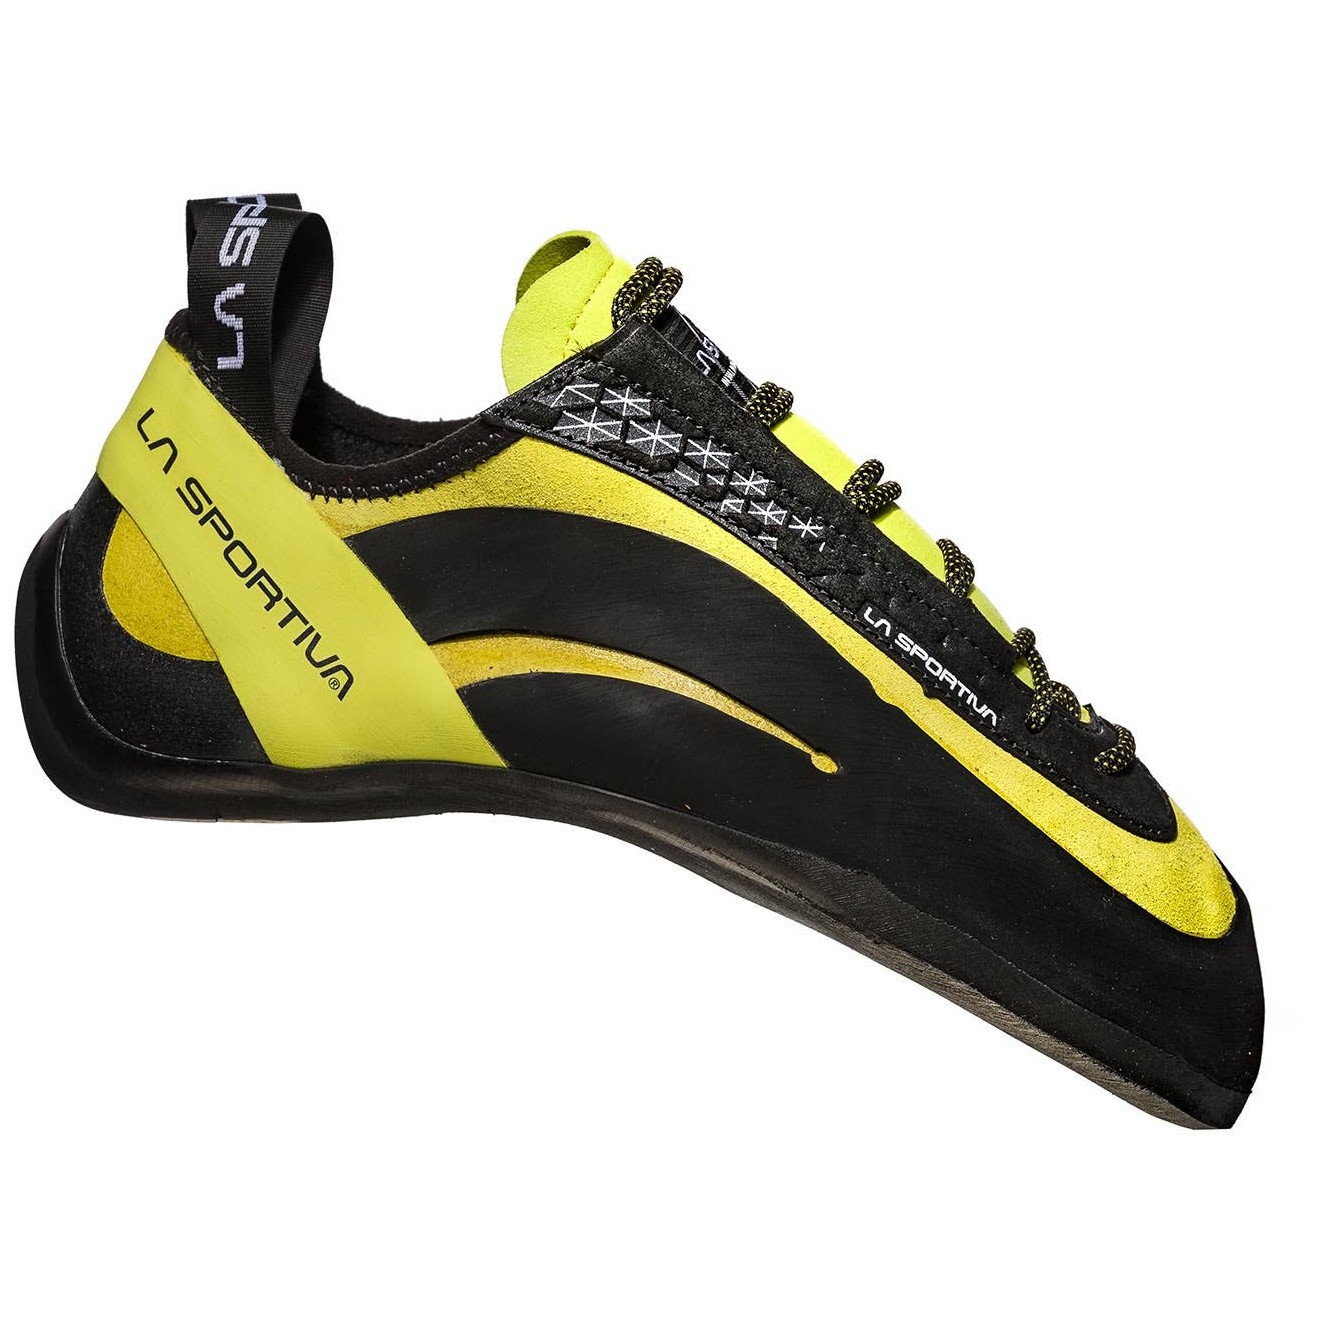 Lezečky La Sportiva Miura (20J) Velikost bot (EU): 40 / Barva: černá/žlutá